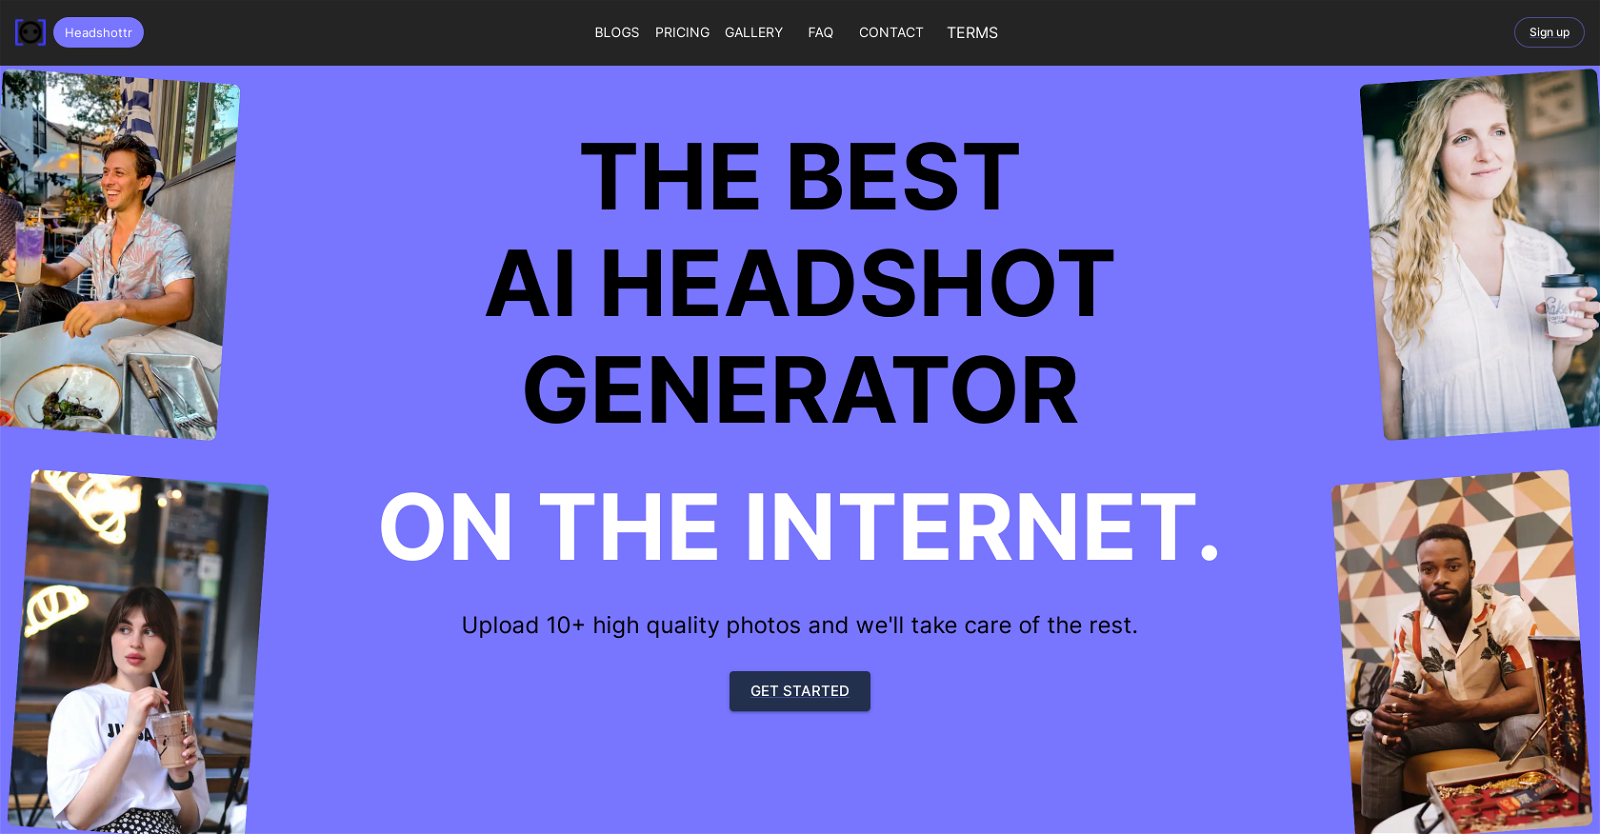 Headshottr website